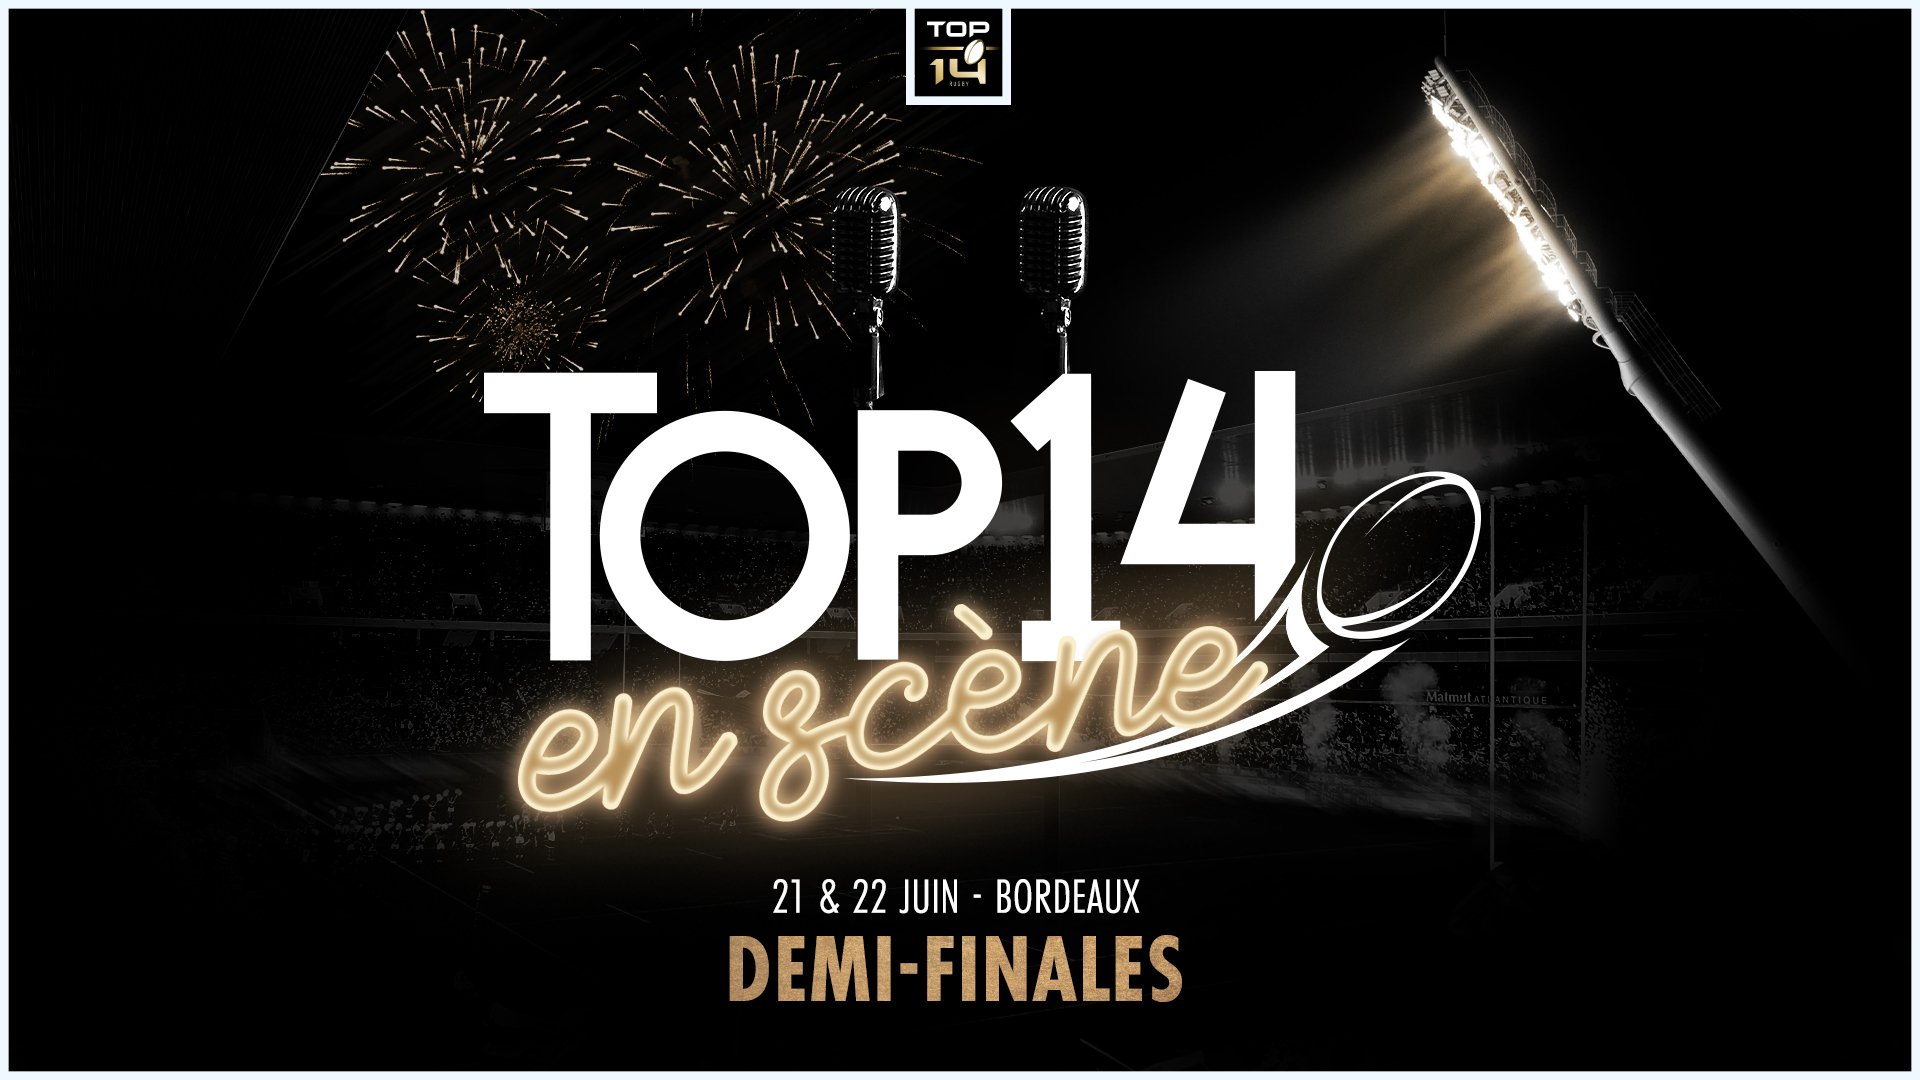 LE TOP 14 ENTRE EN SCENE A BORDEAUX !